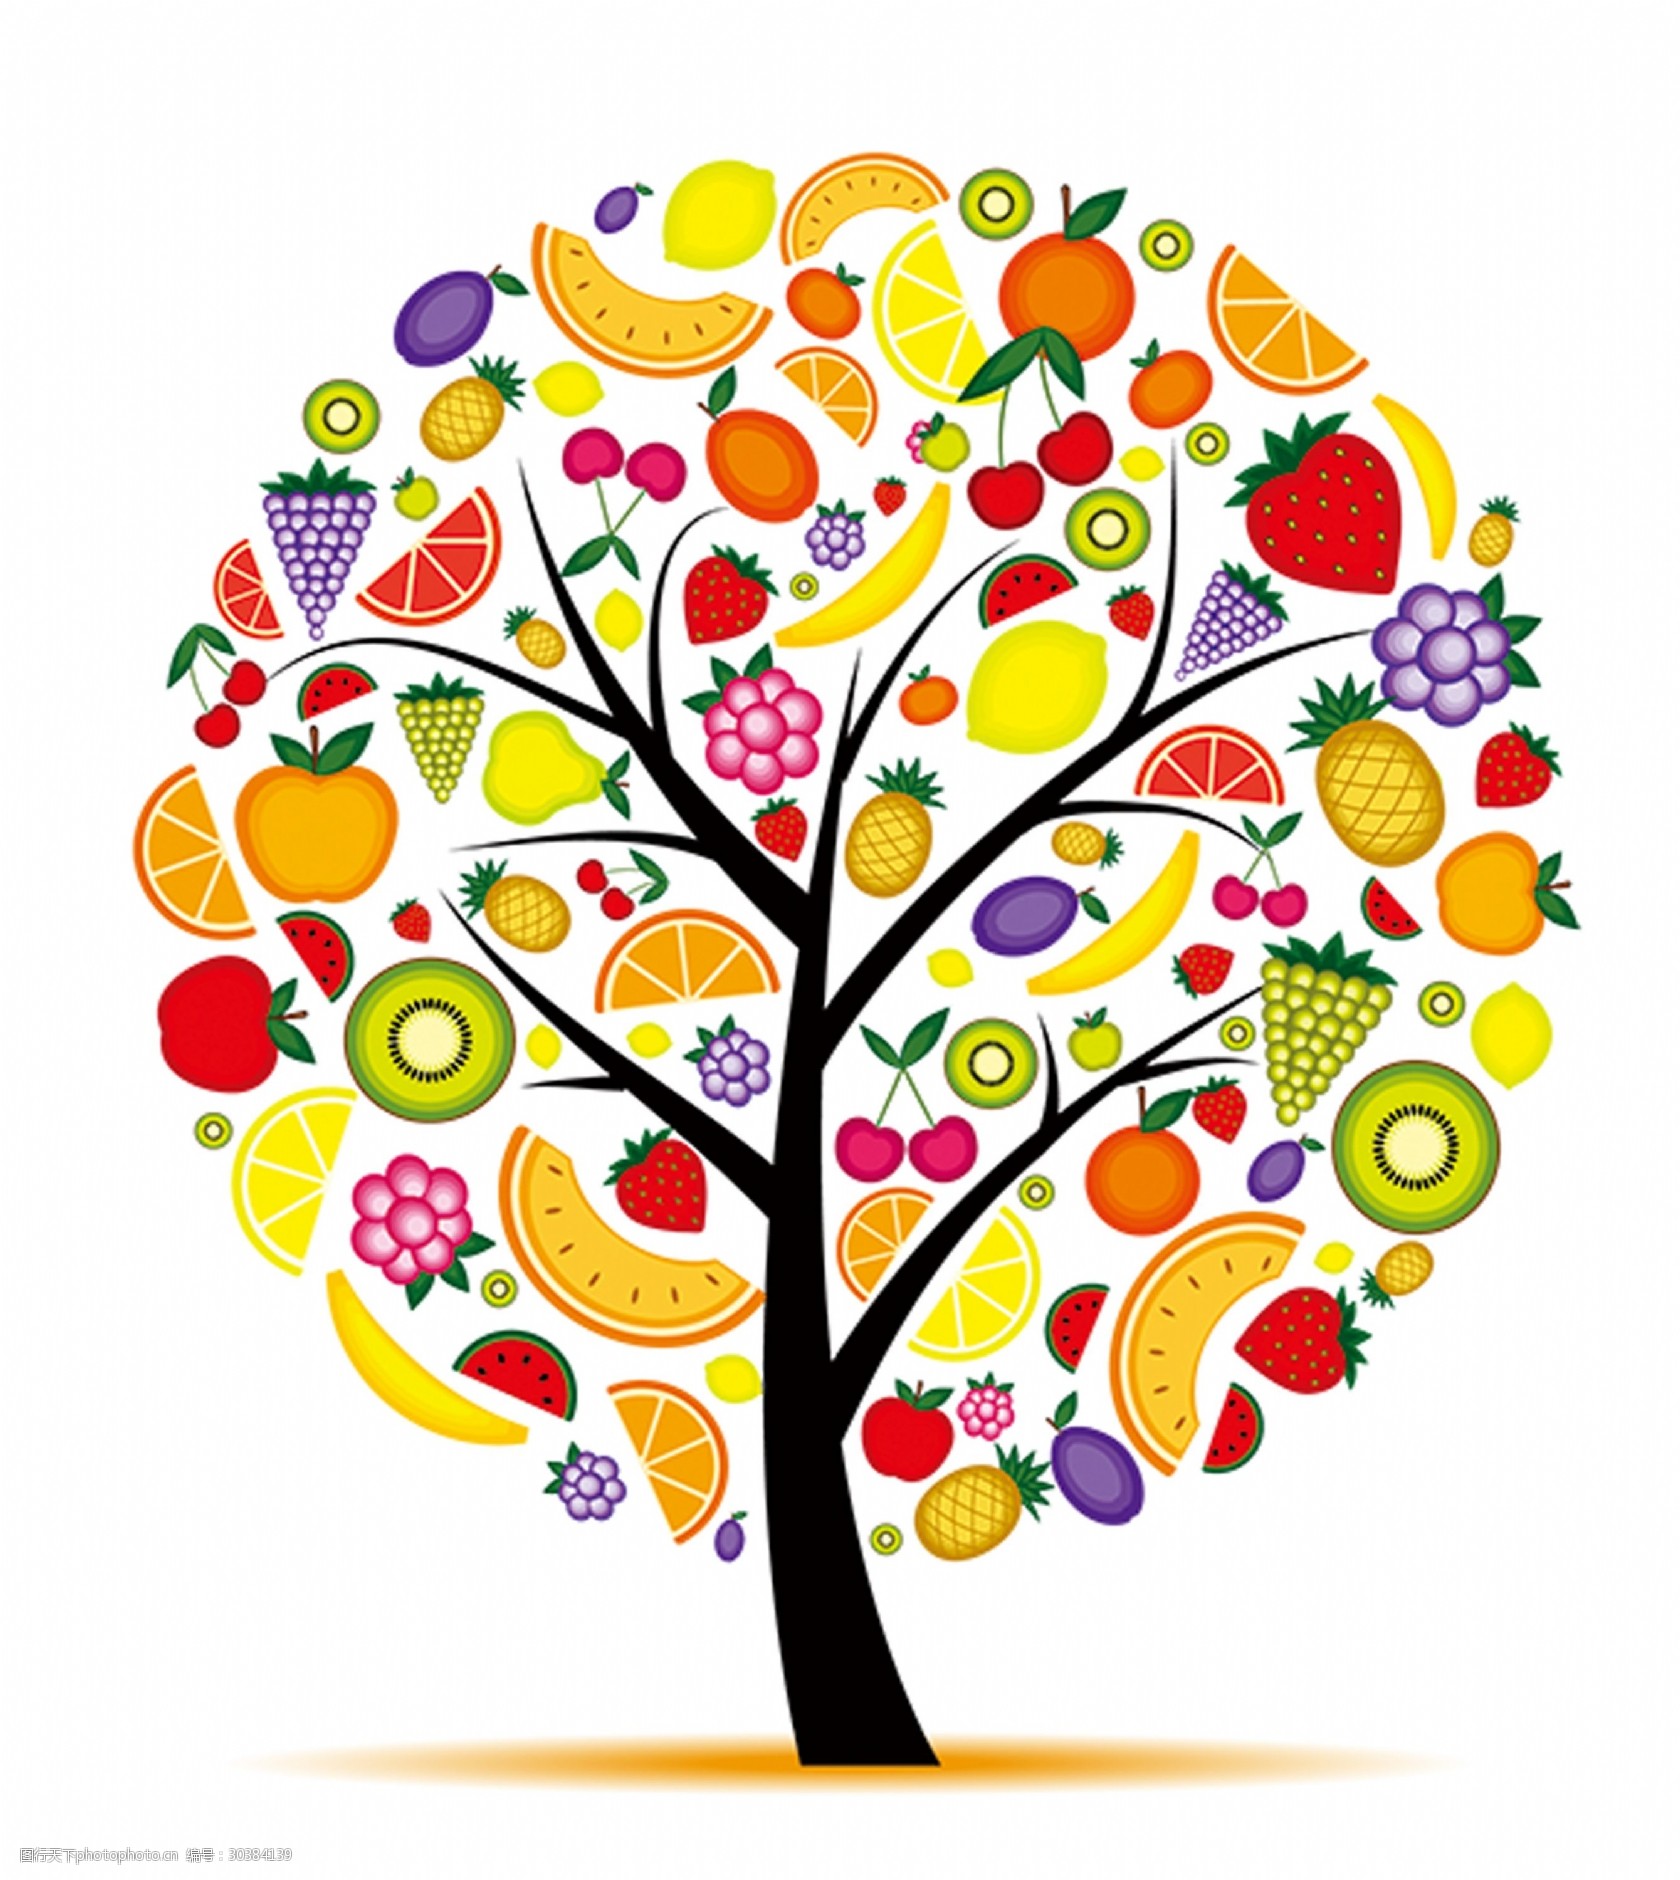 关键词:水果创意树木元素 创意 树木 卡通 草莓 彩色 水果 树 西瓜